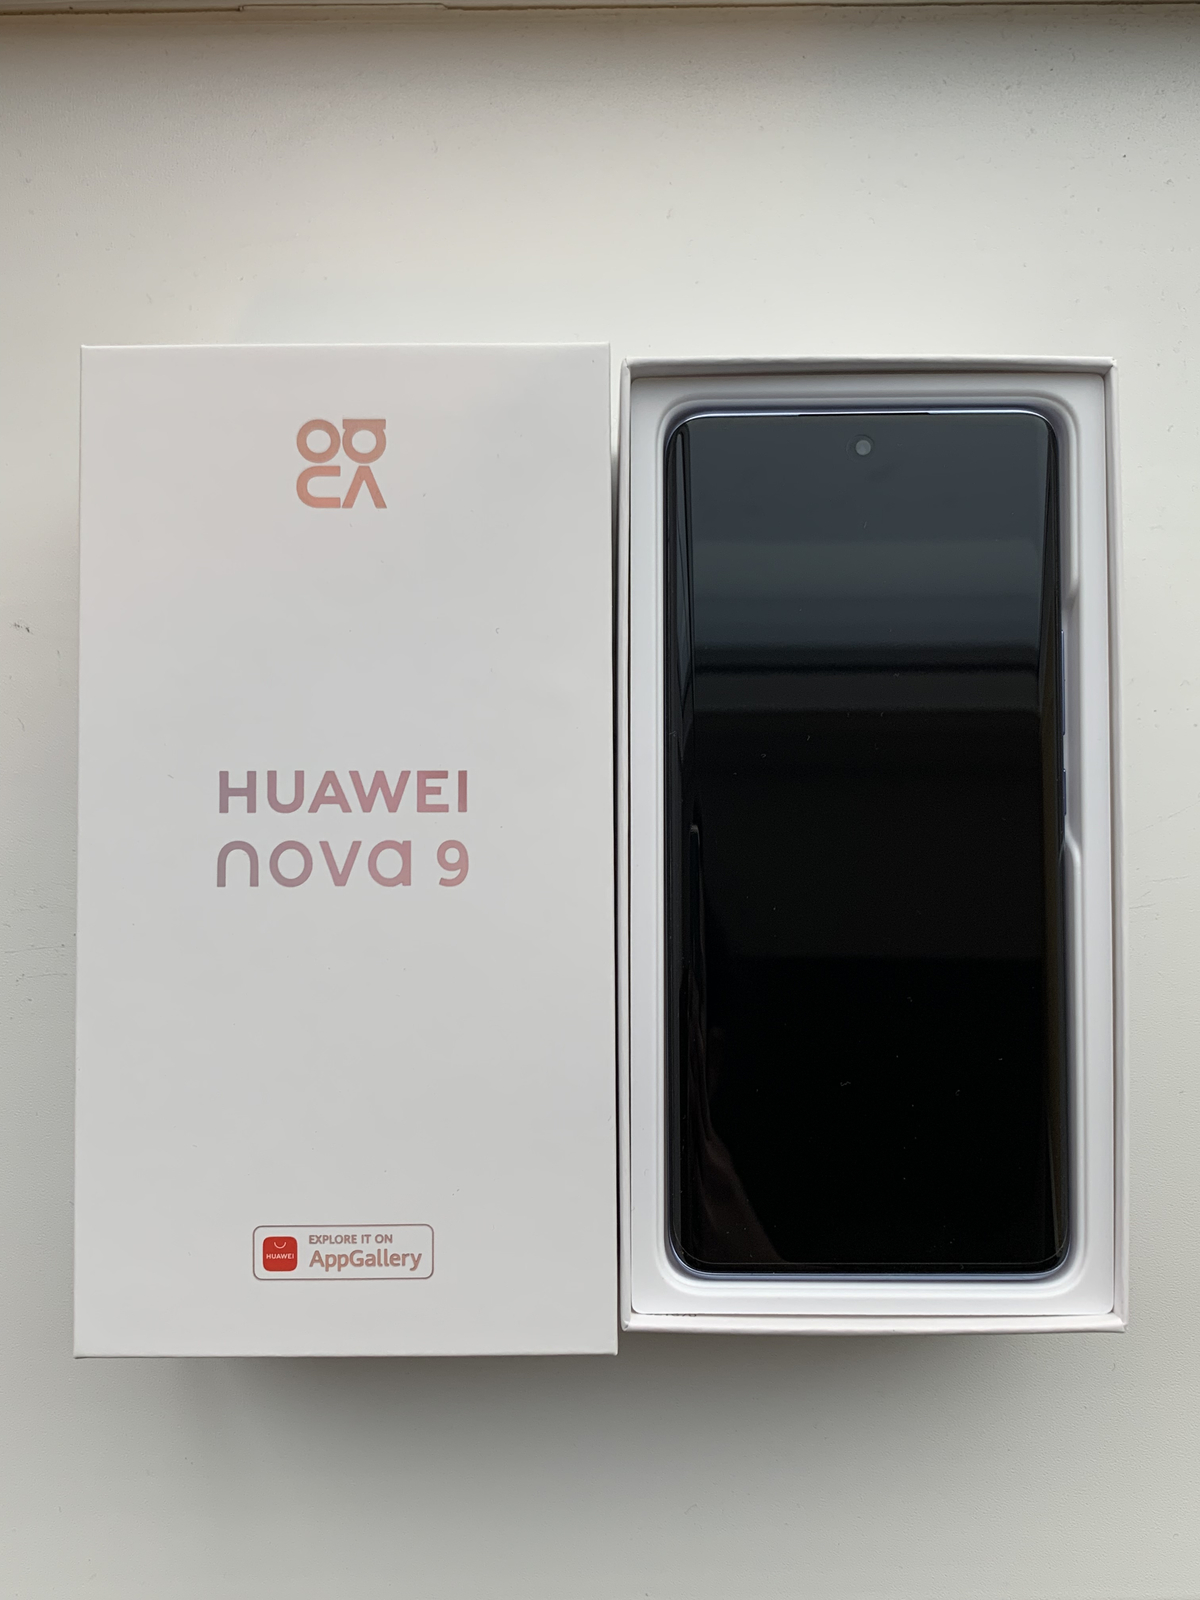 Huawei nova 9 — смартфон для игры и съемки